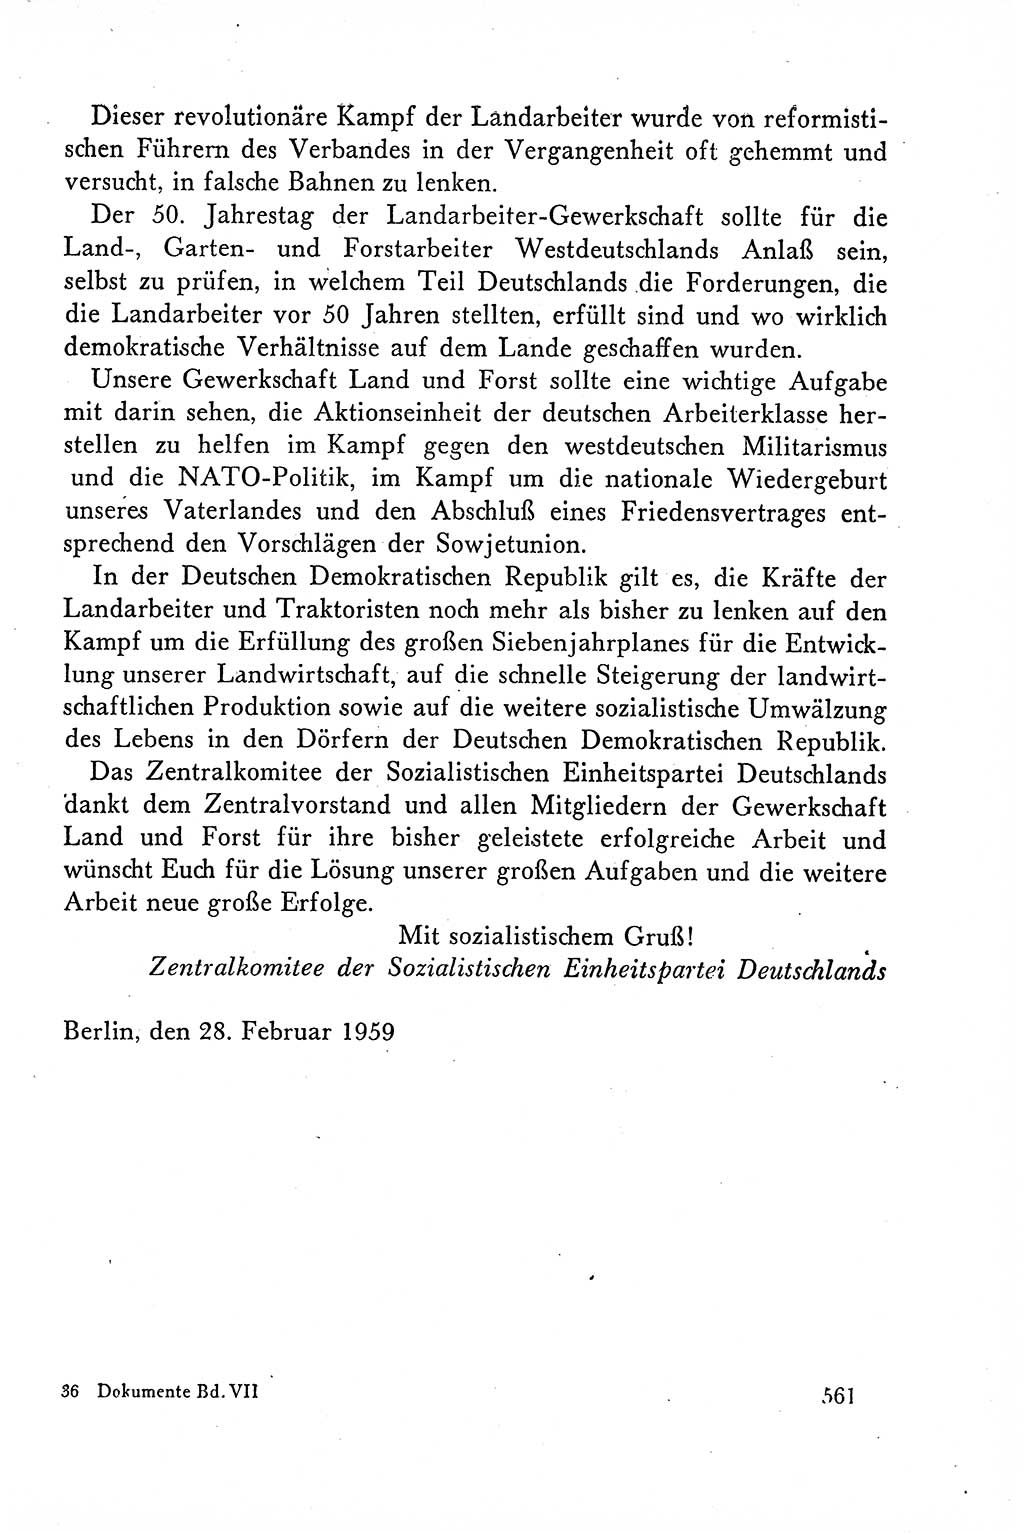 Dokumente der Sozialistischen Einheitspartei Deutschlands (SED) [Deutsche Demokratische Republik (DDR)] 1958-1959, Seite 561 (Dok. SED DDR 1958-1959, S. 561)